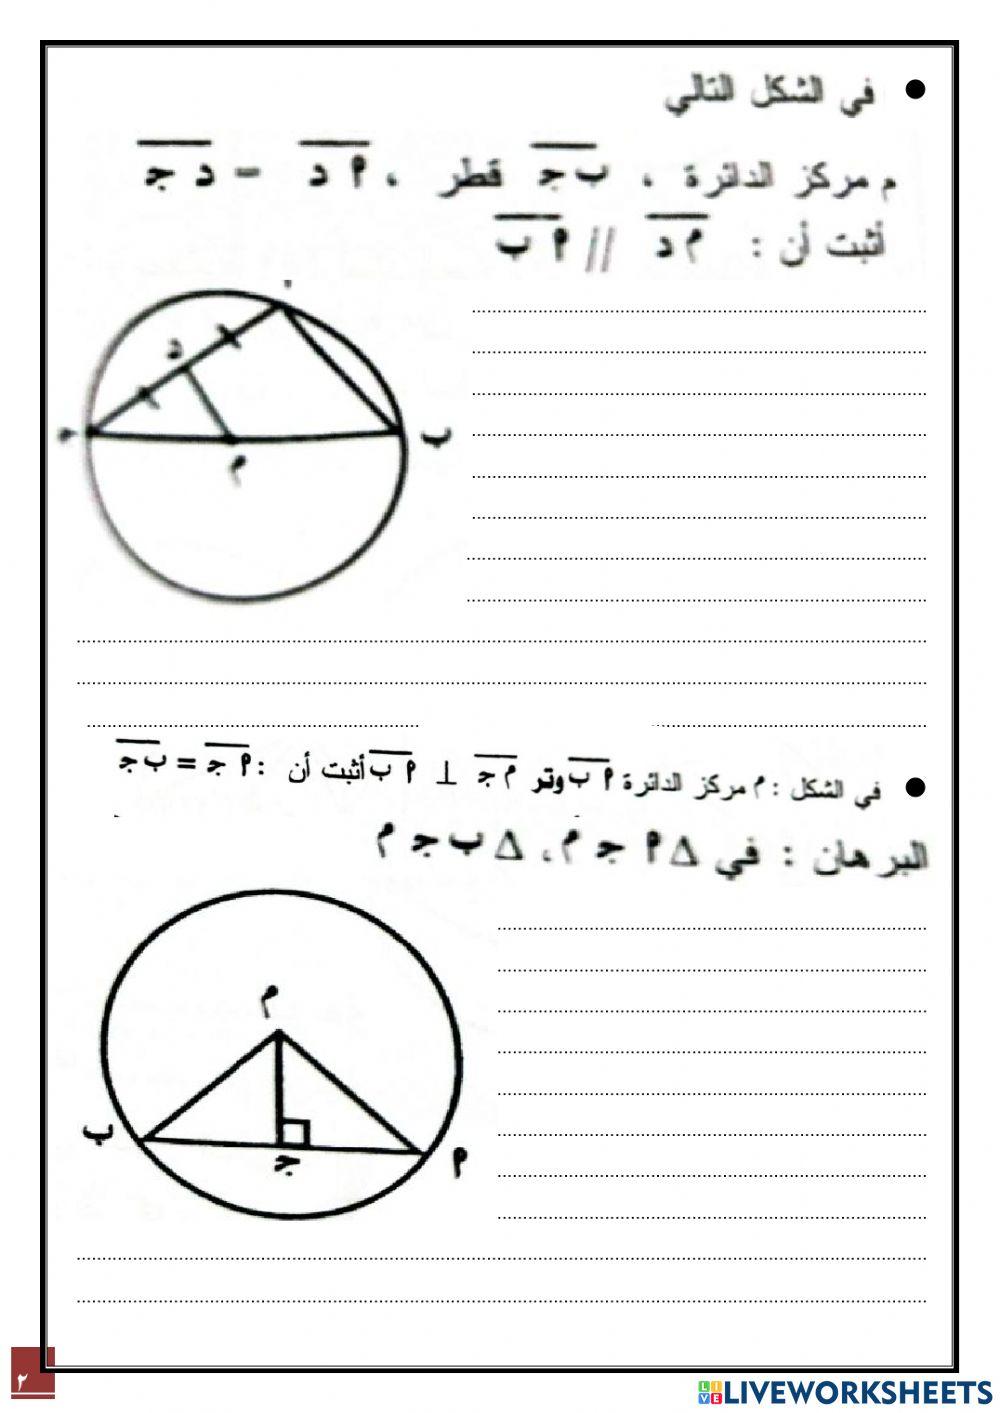 مسابقات نبراس التعليمية التفاعلية -أوراق عمل 2- رياضيات ثامن